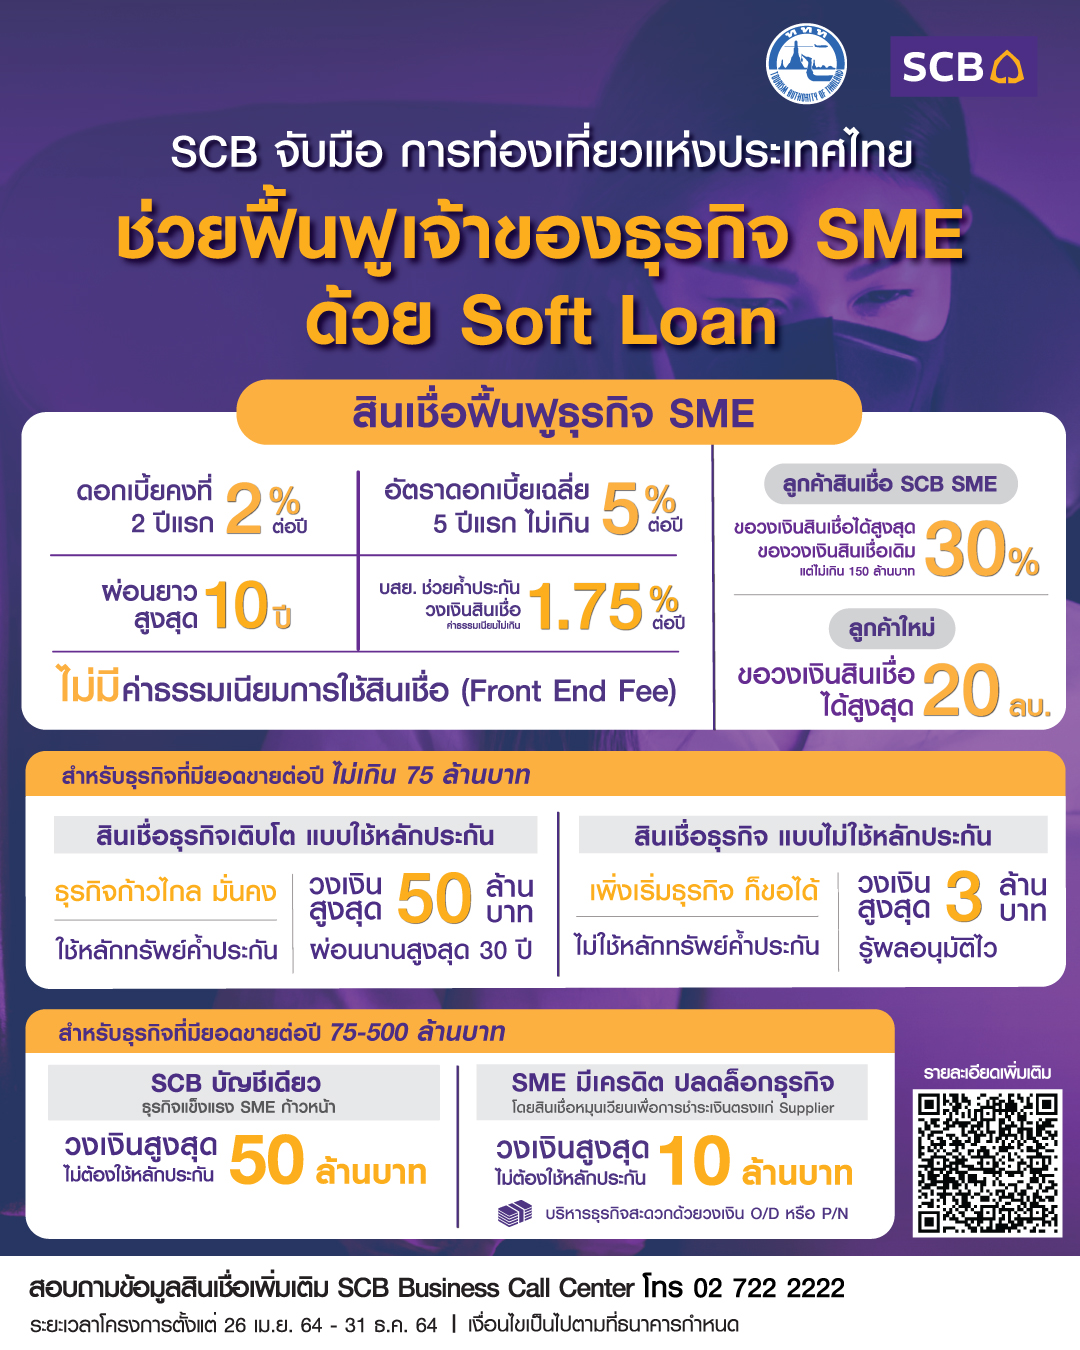 SCB จับมือการท่องเที่ยวแห่งประเทศไทย ฟื้นฟูธุรกิจ SME